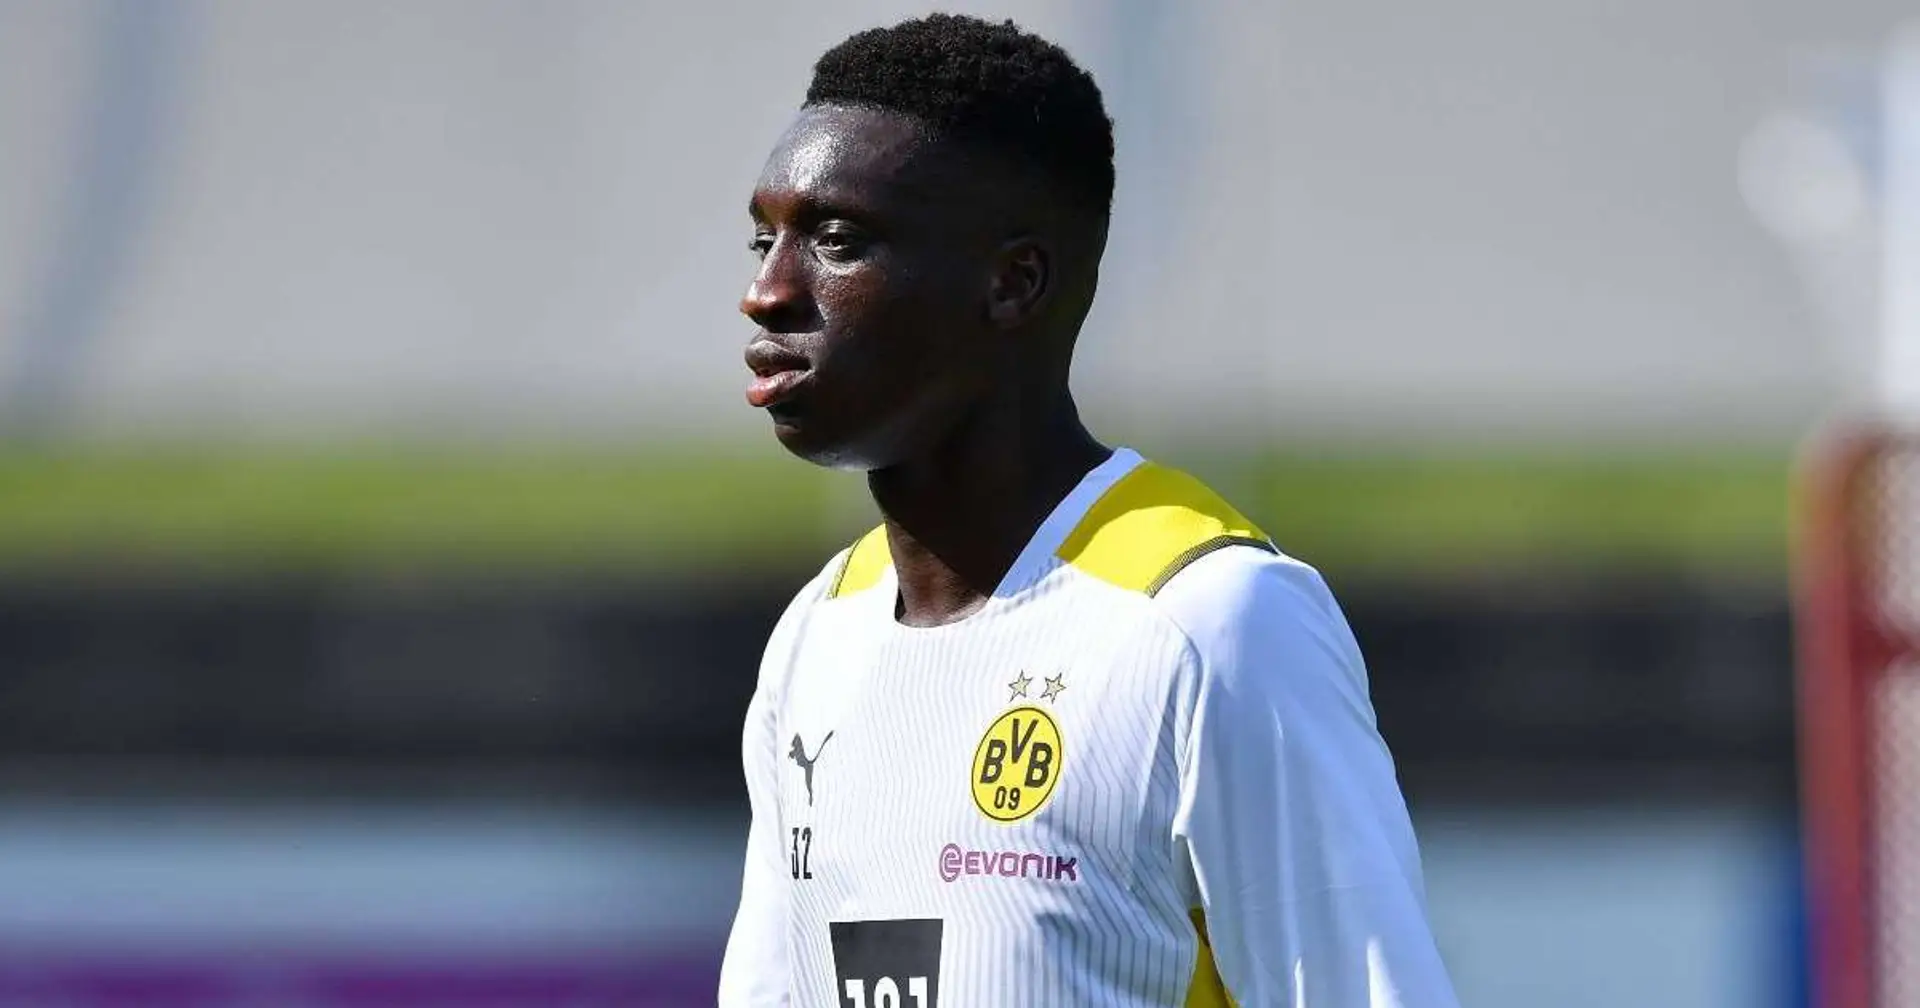 BVB-II-Trainer Enrico Maaßen: Neuzugang Abdoulaye Kamara ist bei der U19 "unterfordert"